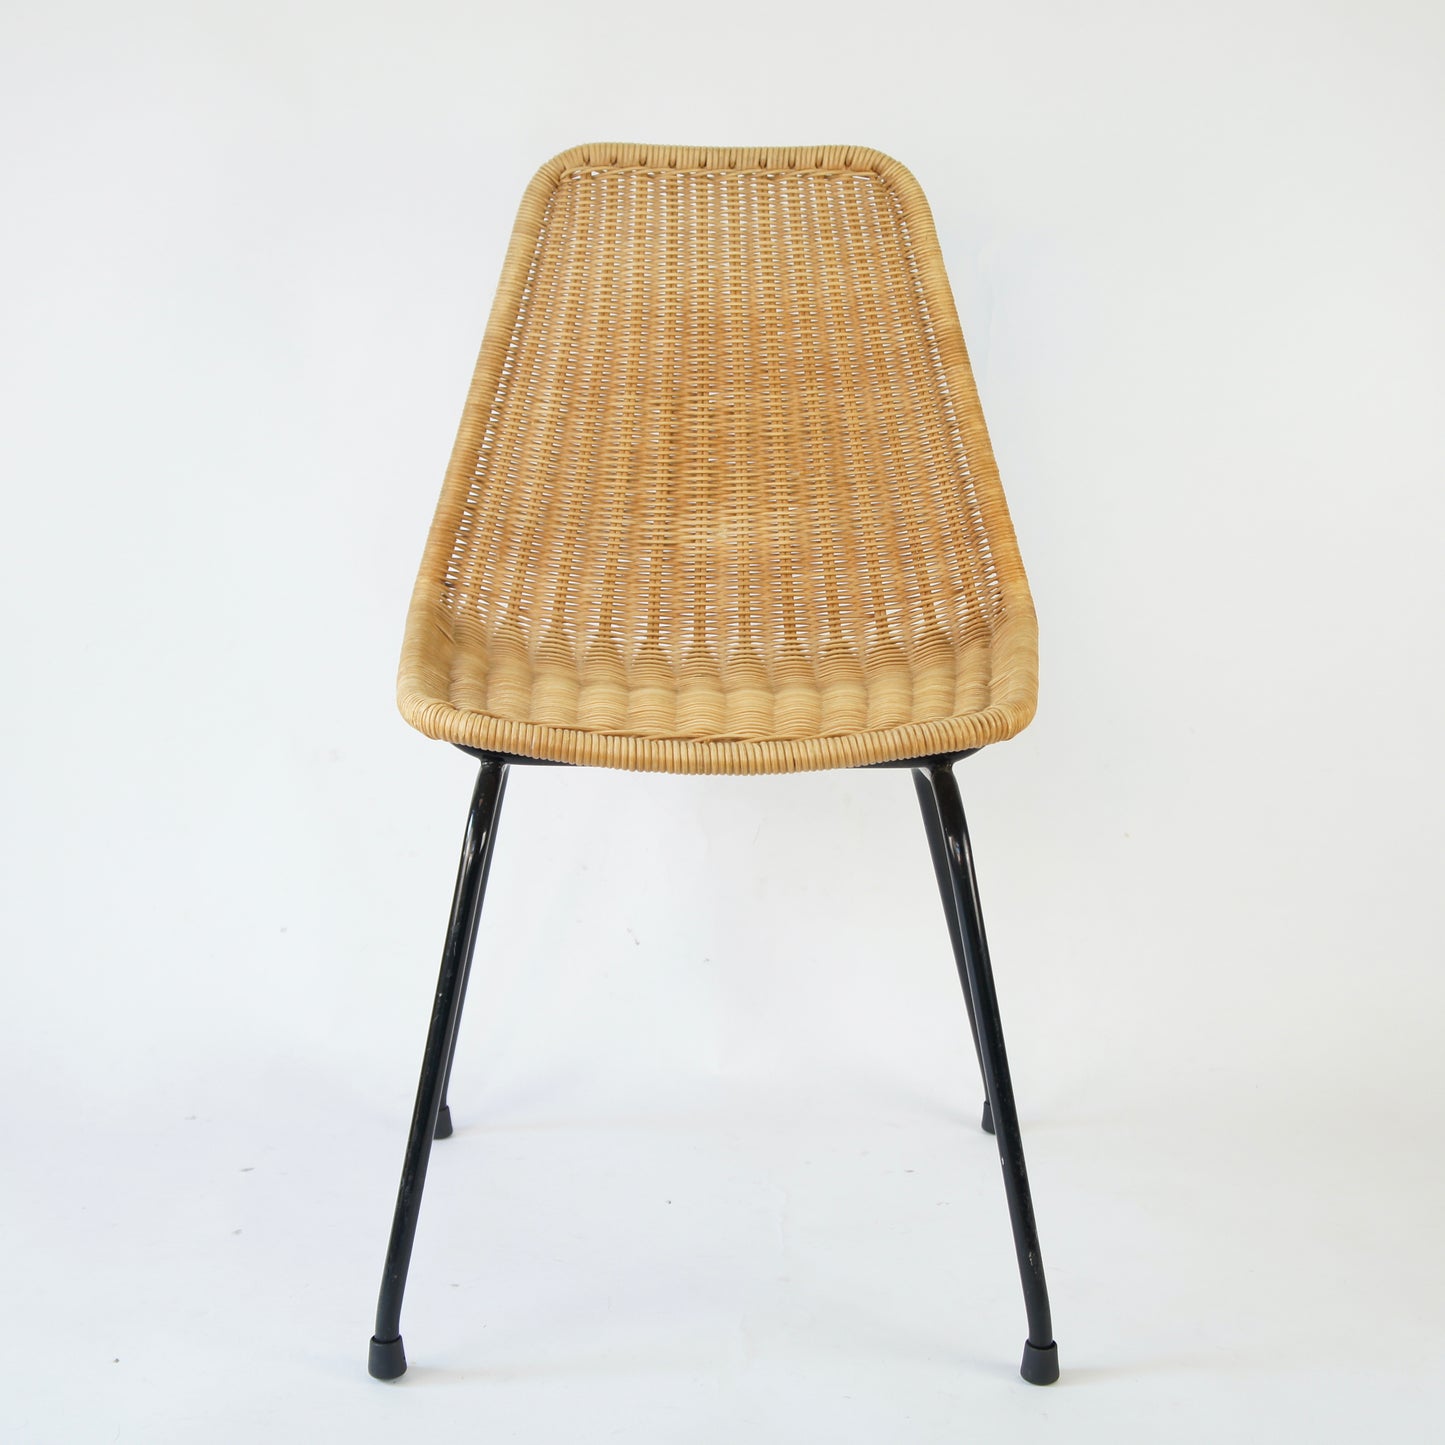 Ratan Chair by Dirk Van Sliedregt